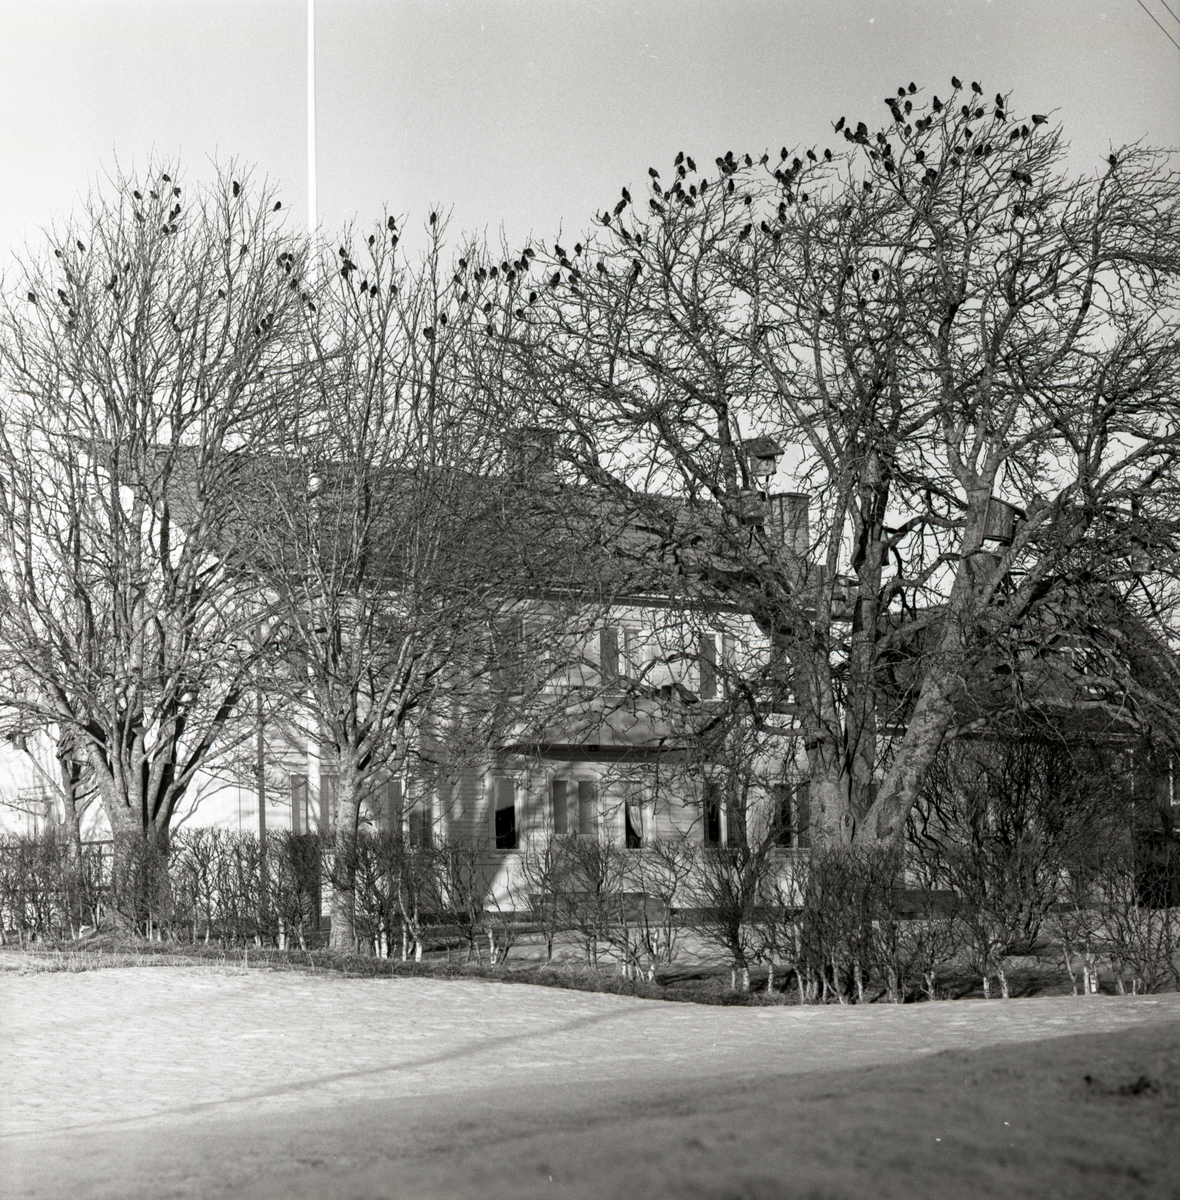 En starflock sitter i ett träd i Flästa, våren 1960.